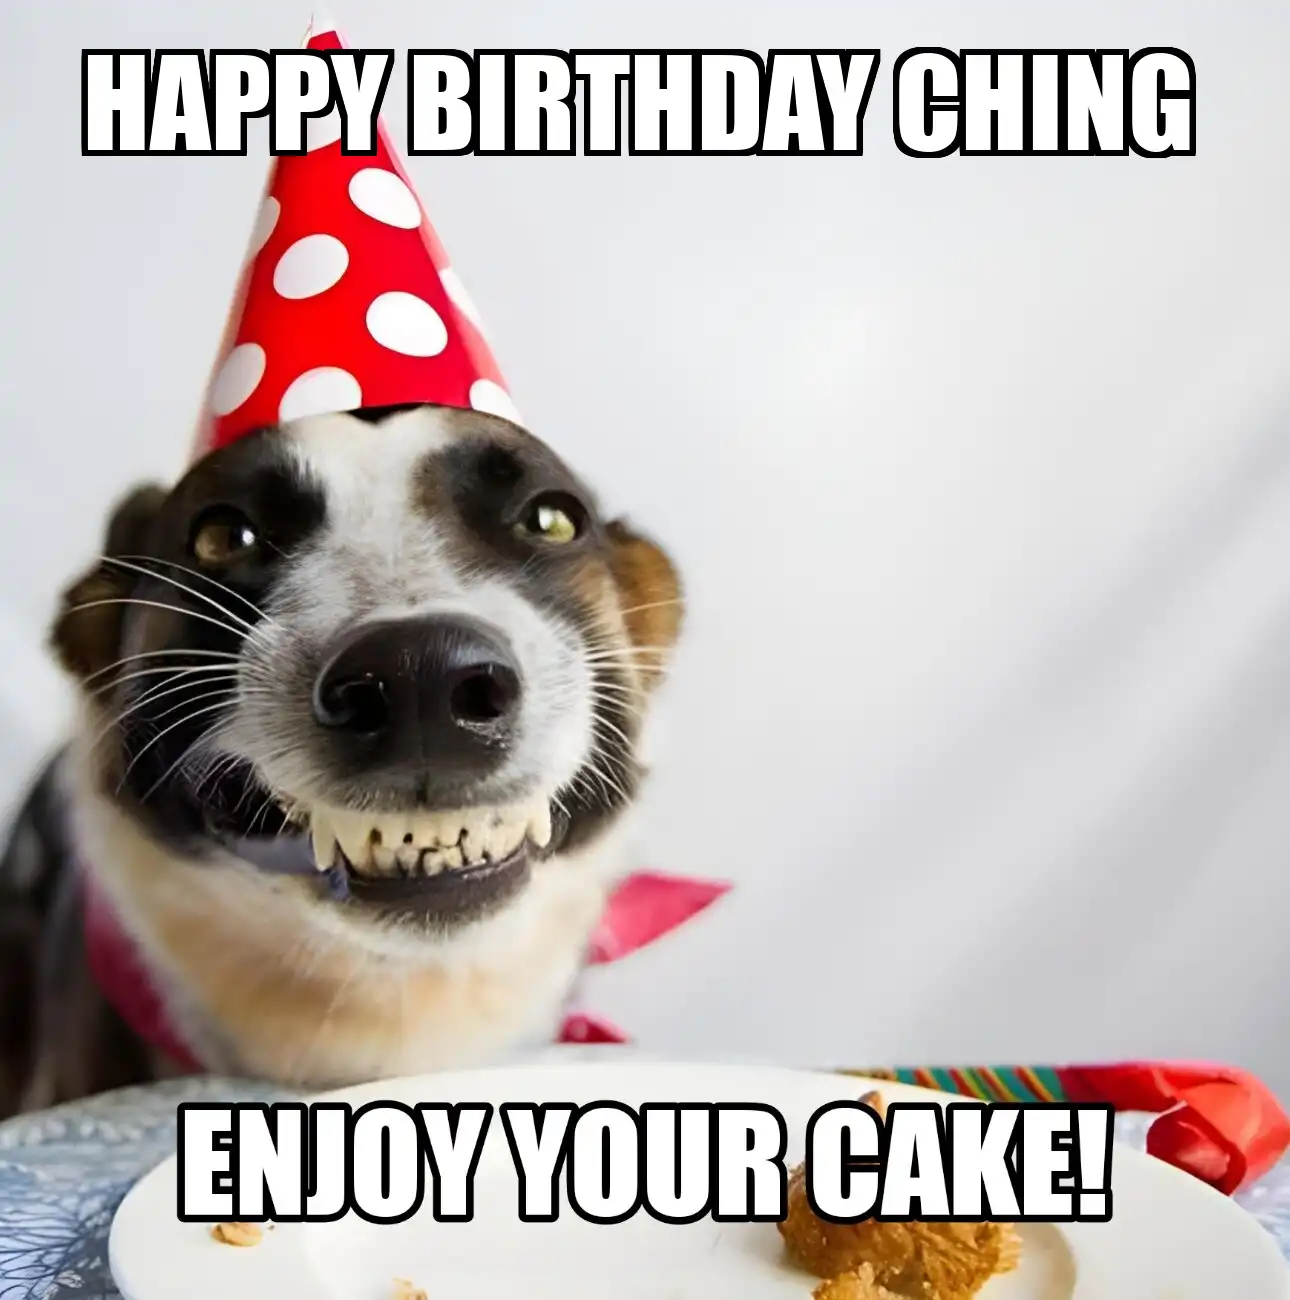 Happy Birthday Ching Enjoy Your Cake Dog Meme